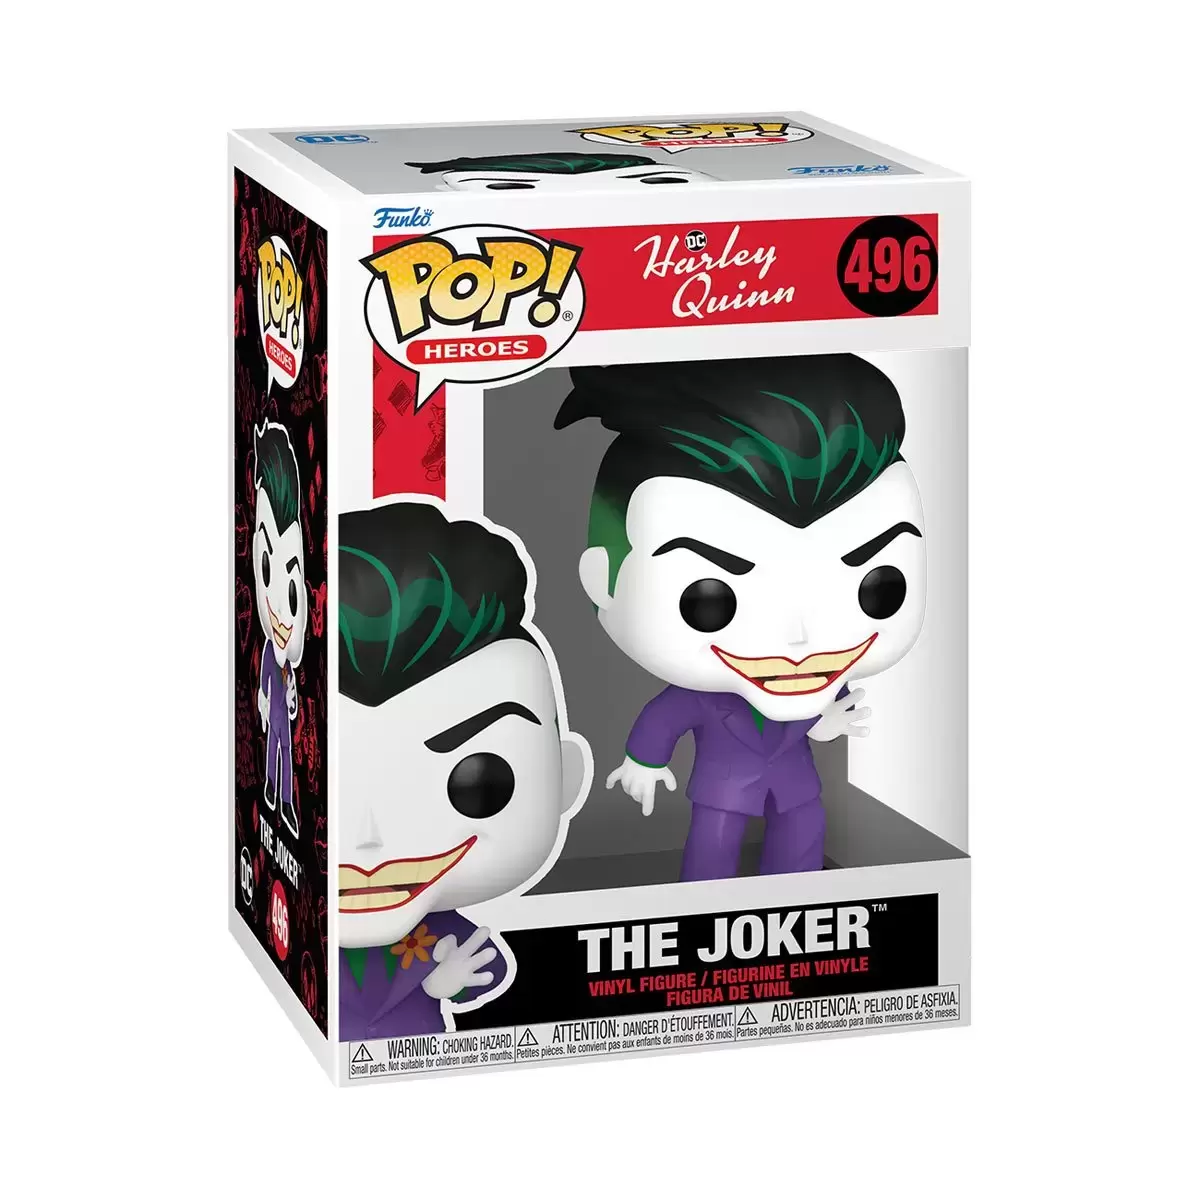 POP! Heroes - Harley Quinn - The Joker